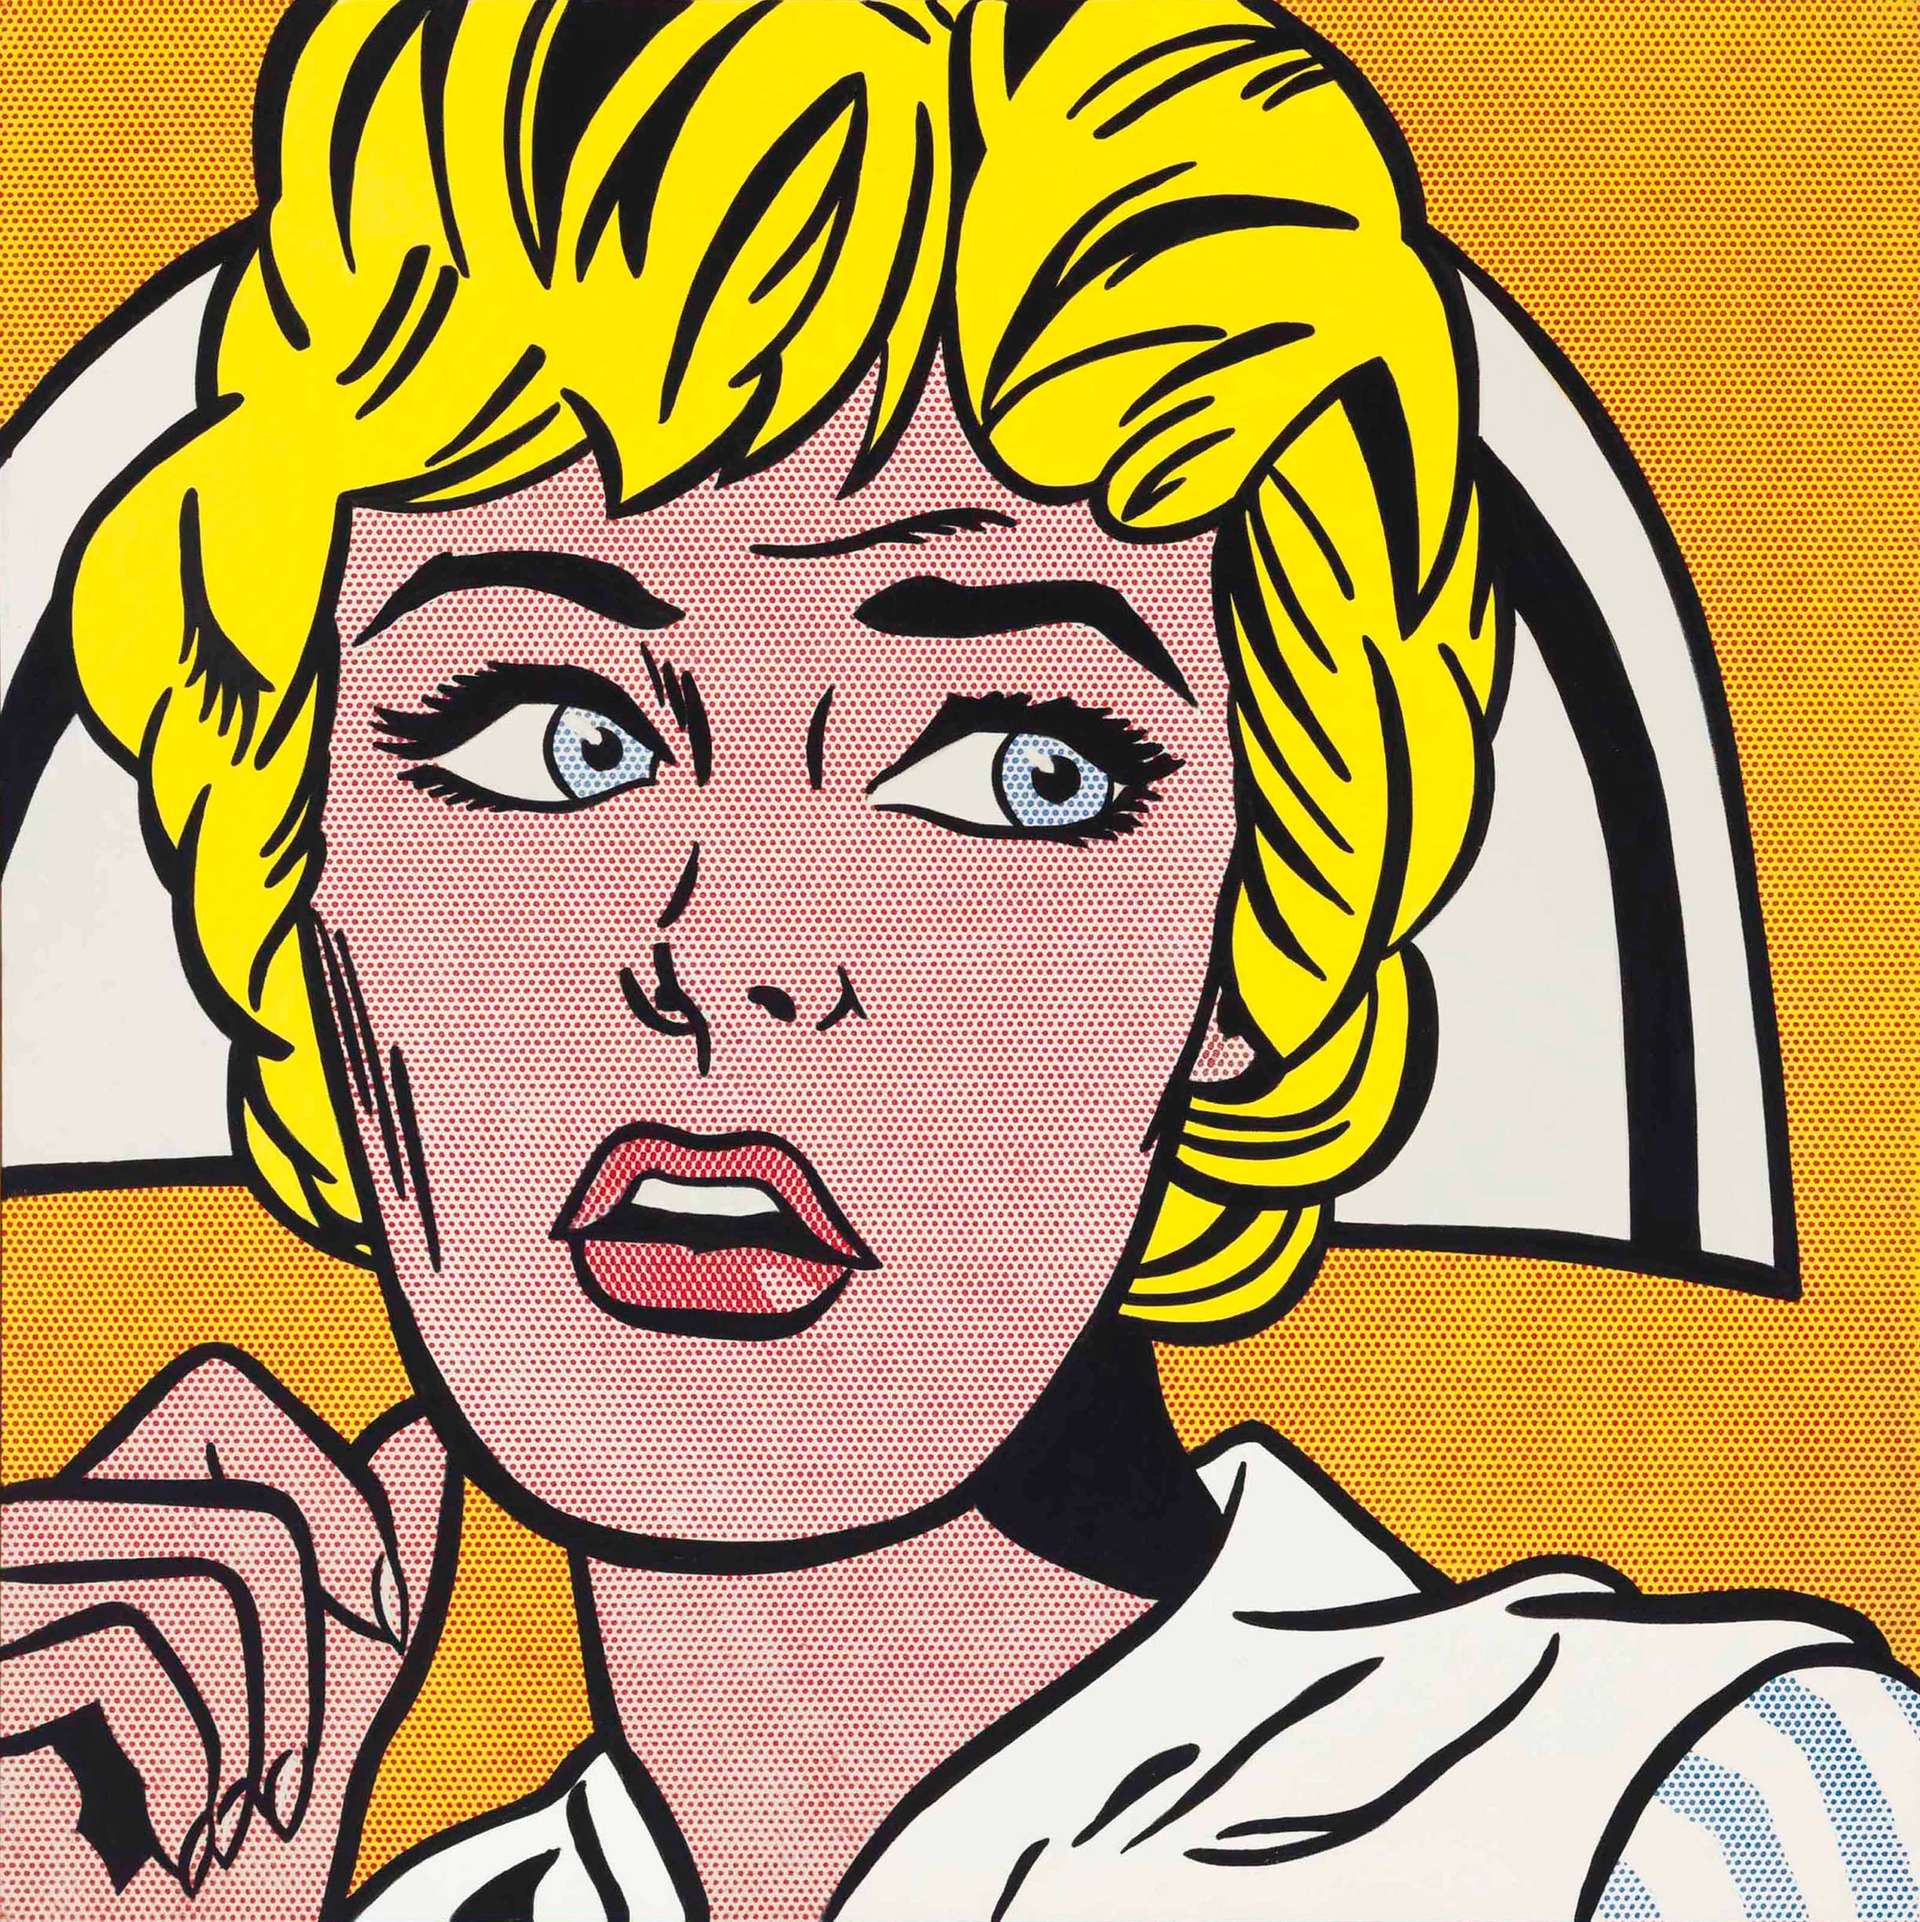 10 Things To Know About Lichtenstein's Pop Art